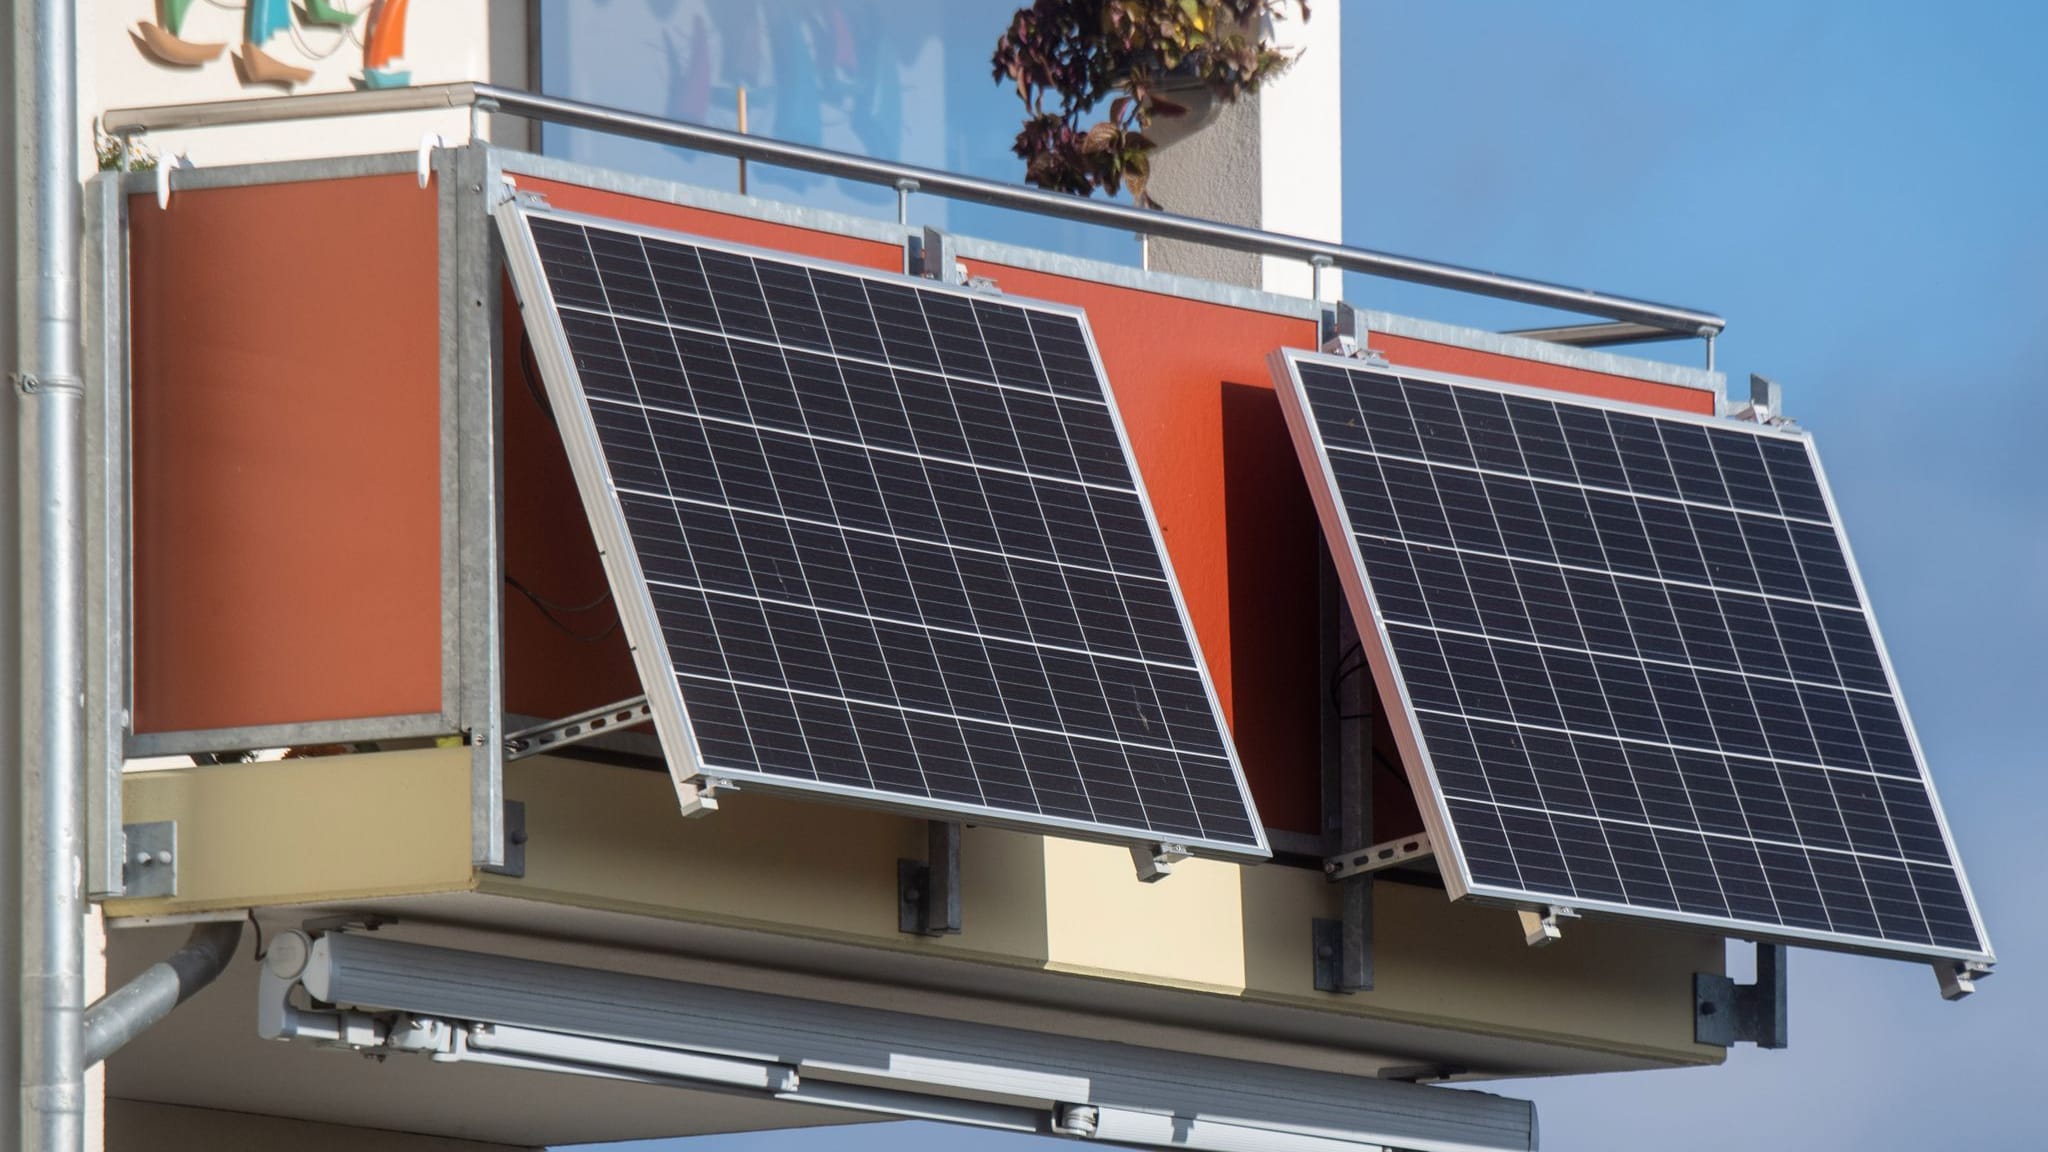 Solaranlagen: Bundesregierung will Photovoltaik stärker fördern